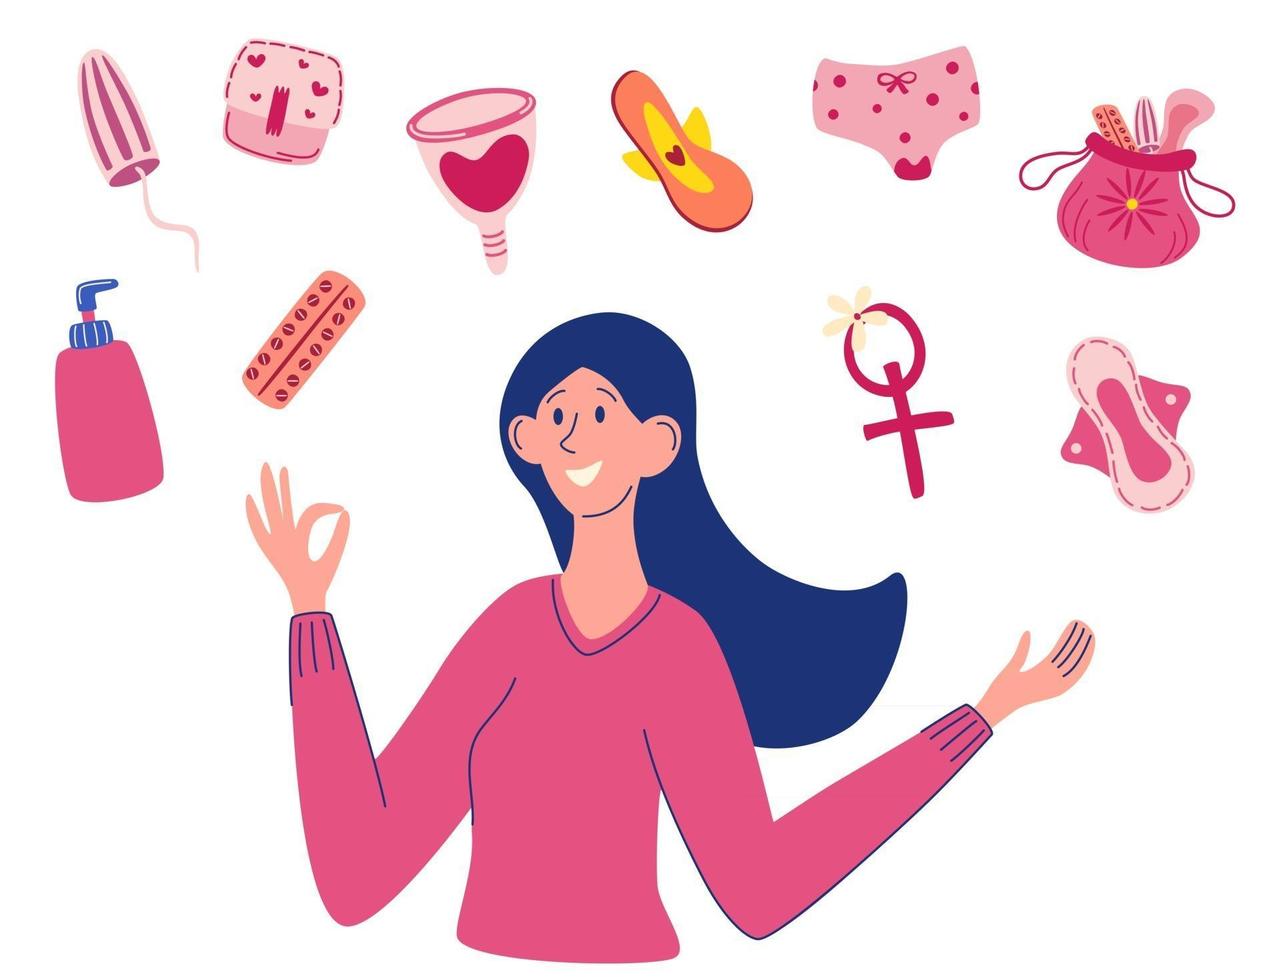 période de thème de menstruation divers produits d'hygiène féminine une jeune fille est heureuse d'avoir divers produits d'hygiène féminine culottes tampons tasses protection menstruelle hygiène féminine vecteur